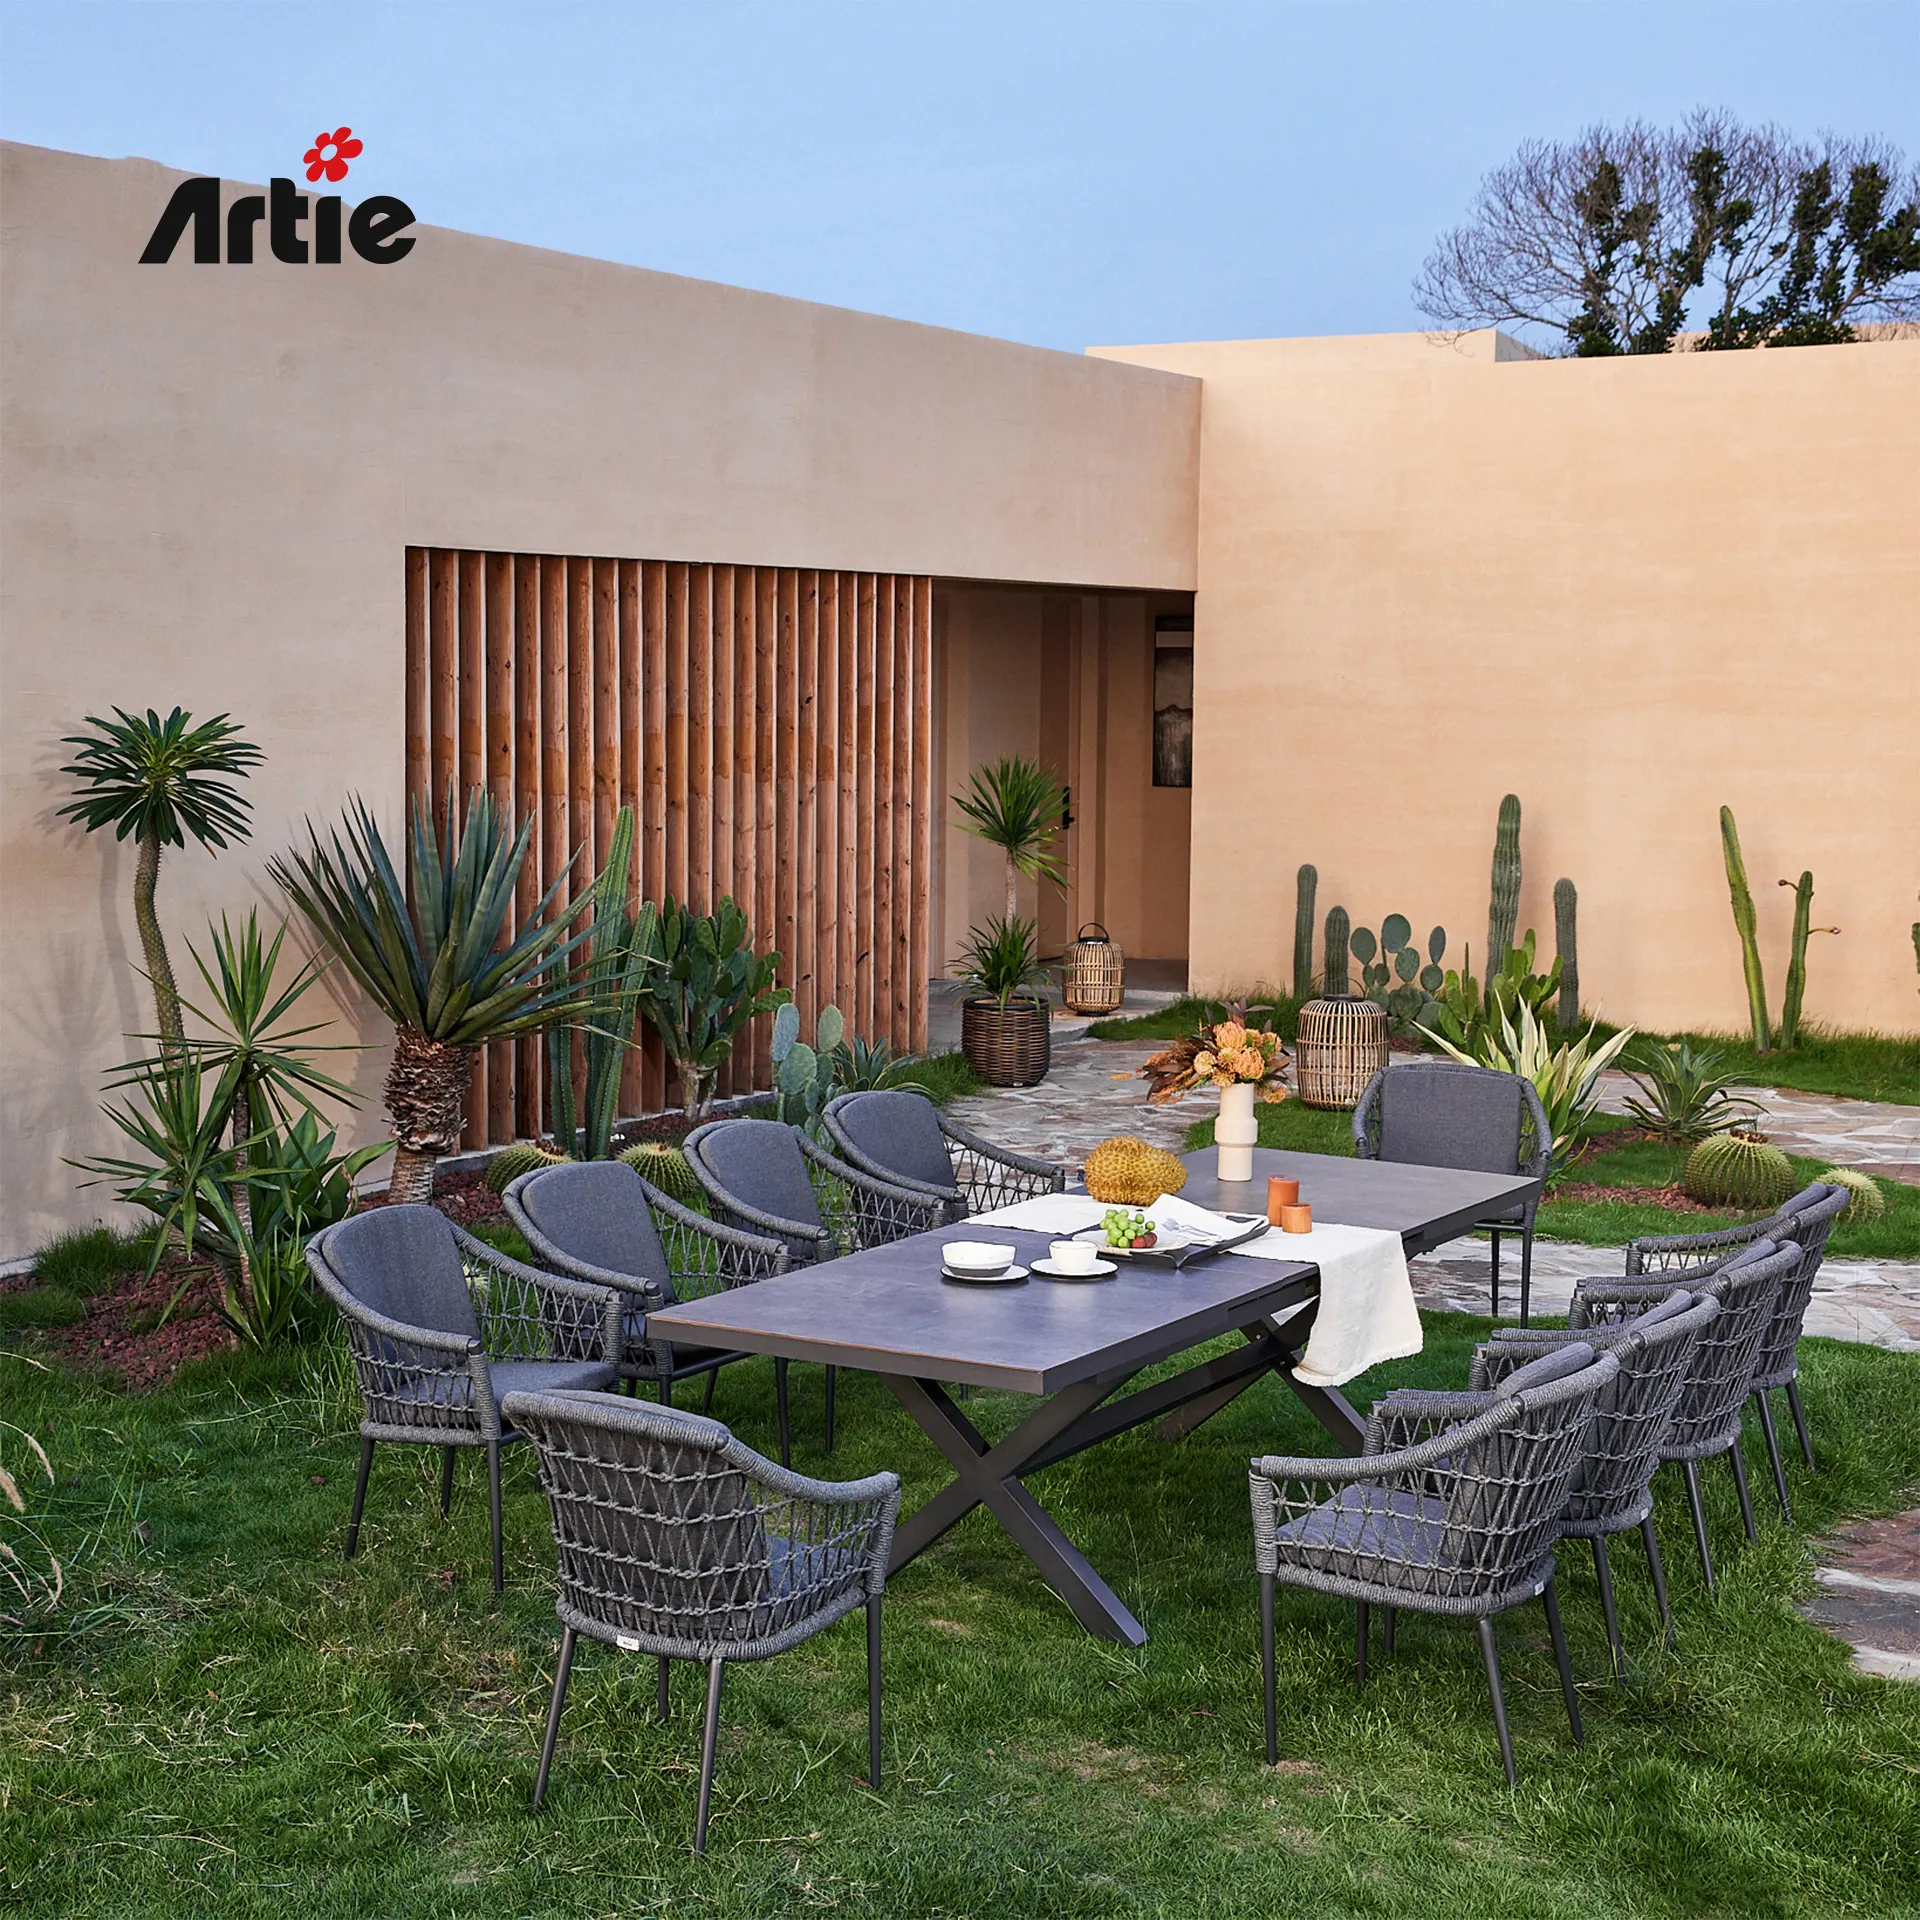 Artieモダンガラス拡張可能テーブル高級ガーデン家具アルミニウム拡張ダイニングテーブルセット屋外用家具